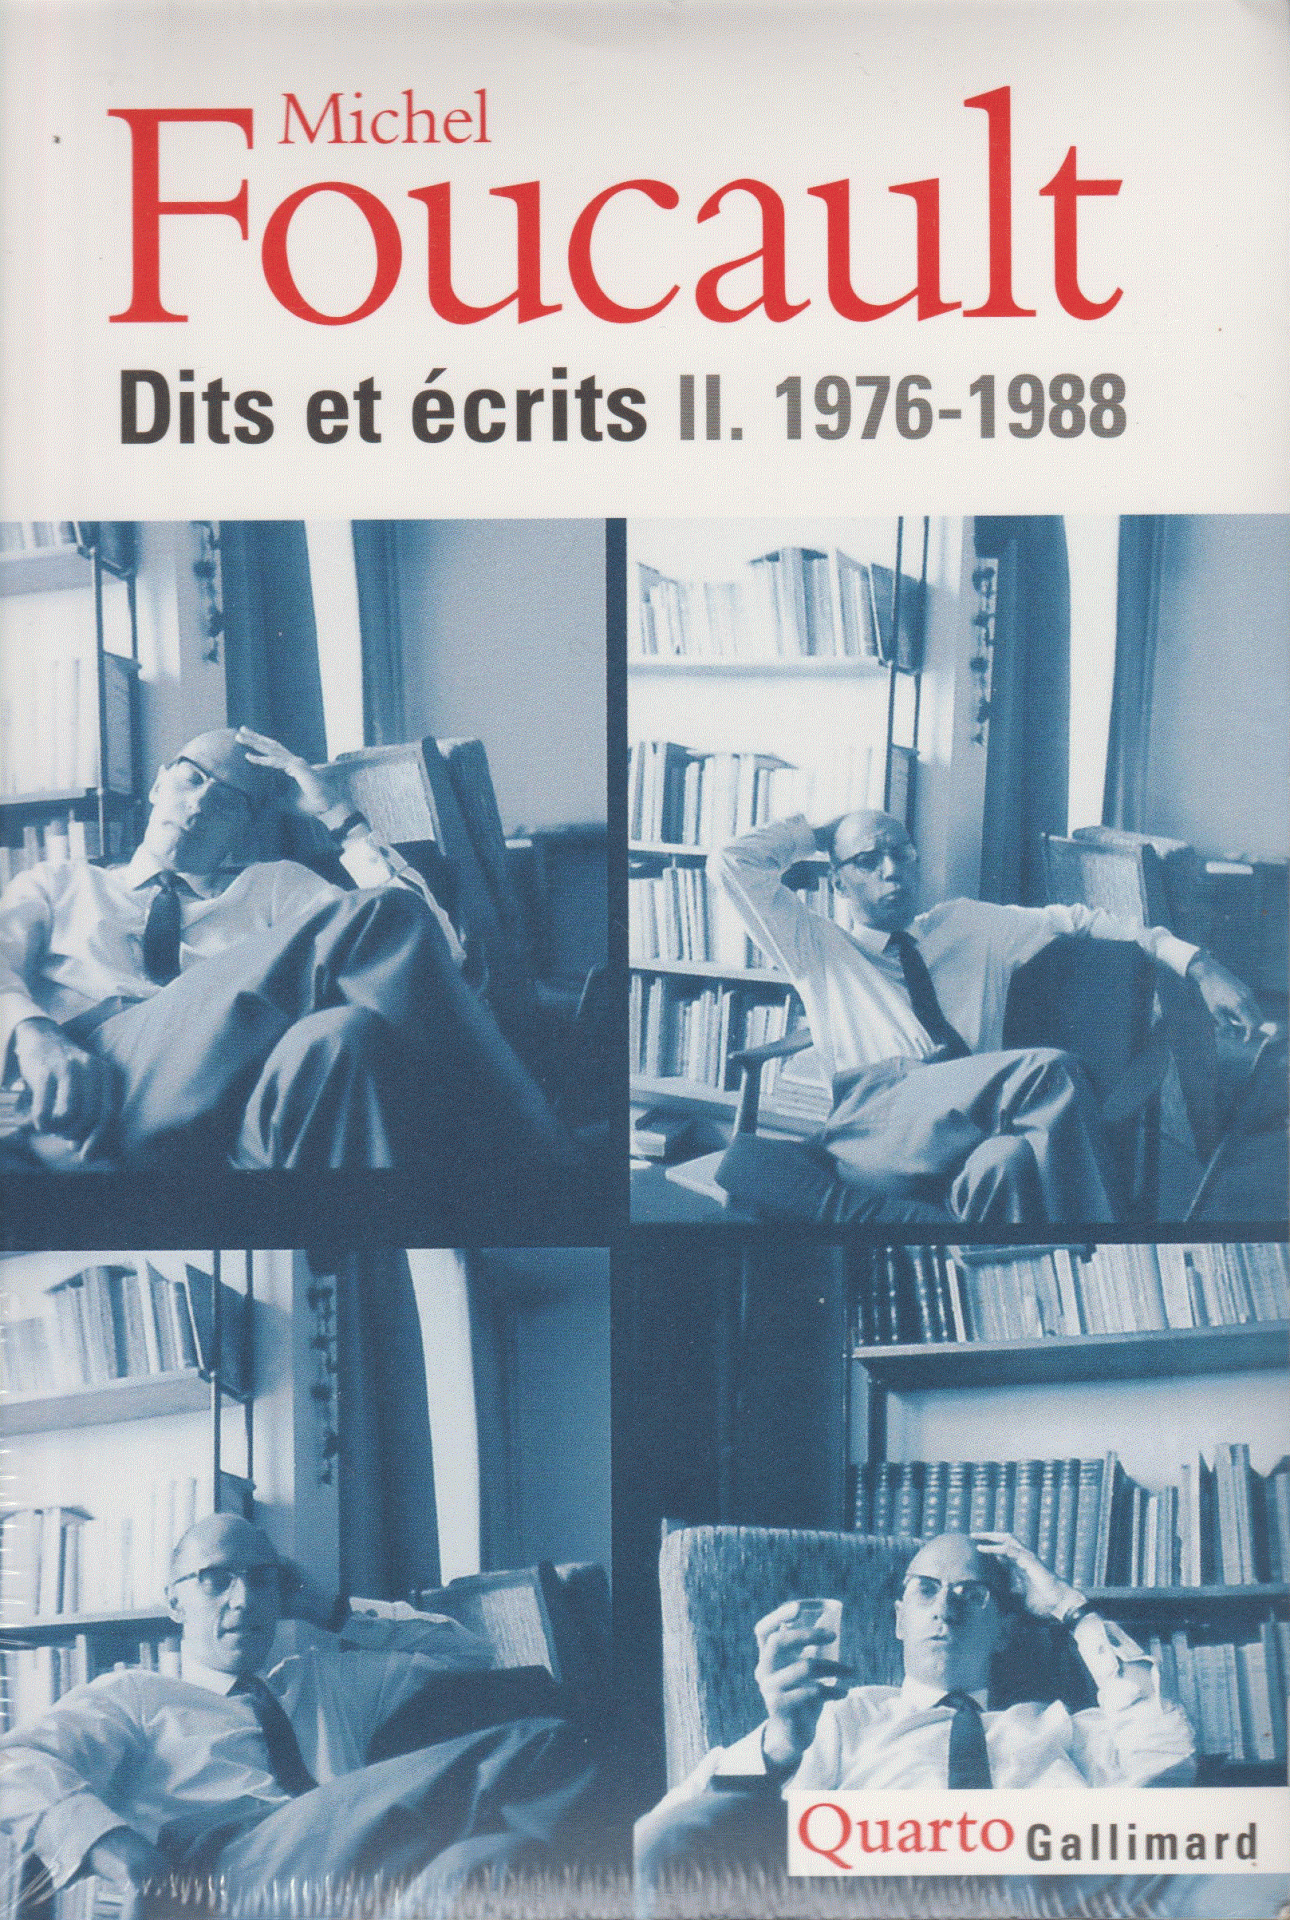 Dits et écrits 1976-1988